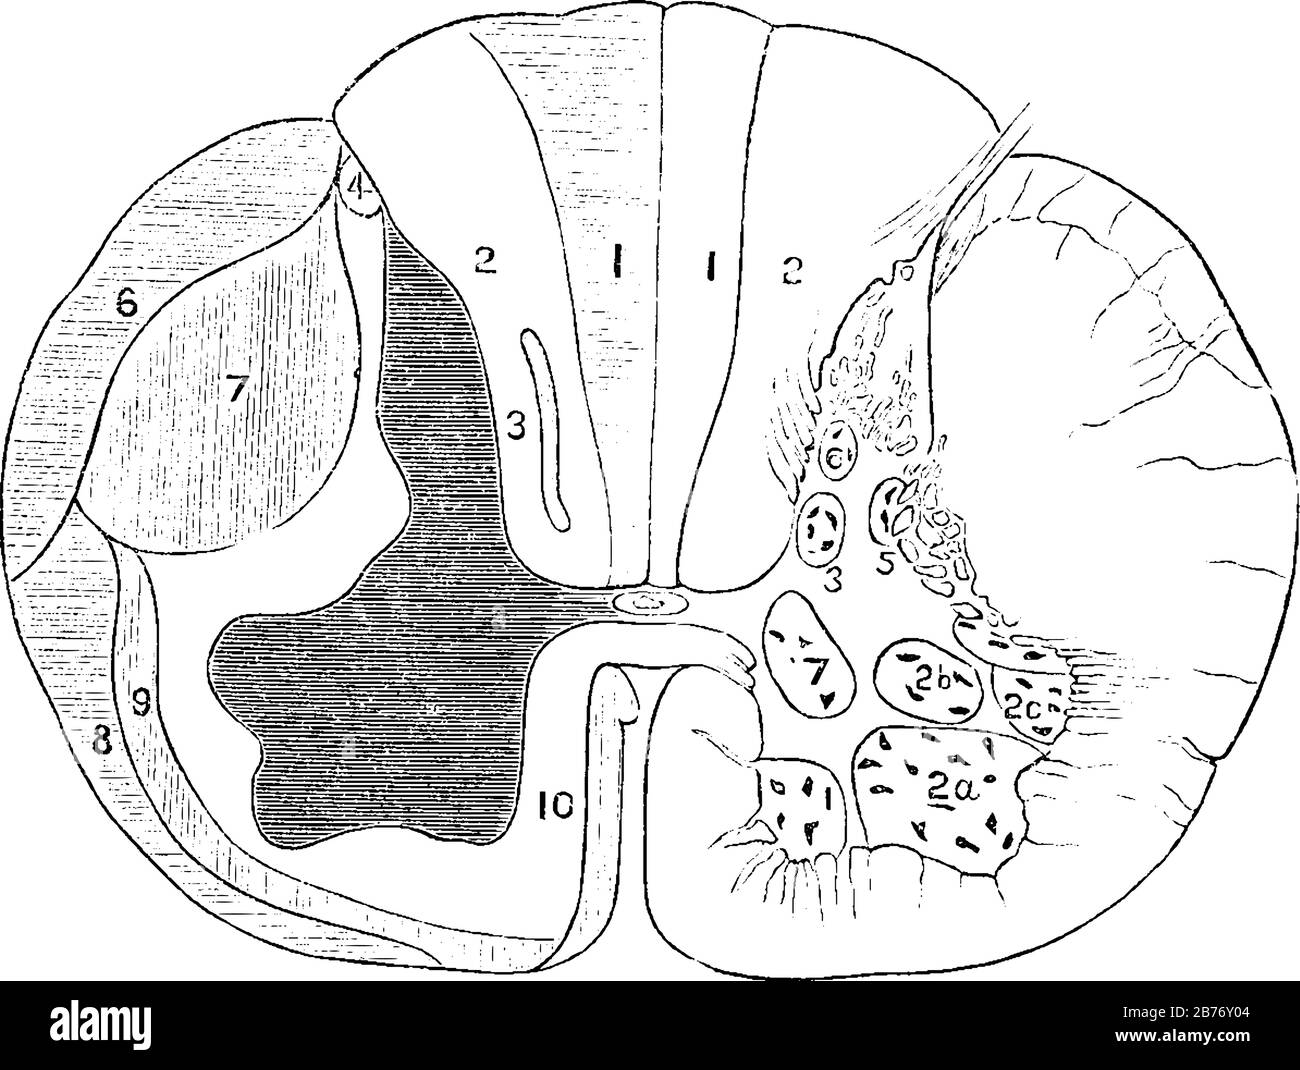 Abschnitt eines Rückenmarks, von dem eine Hälfte die Trakte der weißen Substanz zeigt, und die andere Hälfte (rechts) zeigt die Position der Nervenzellen, VI Stock Vektor